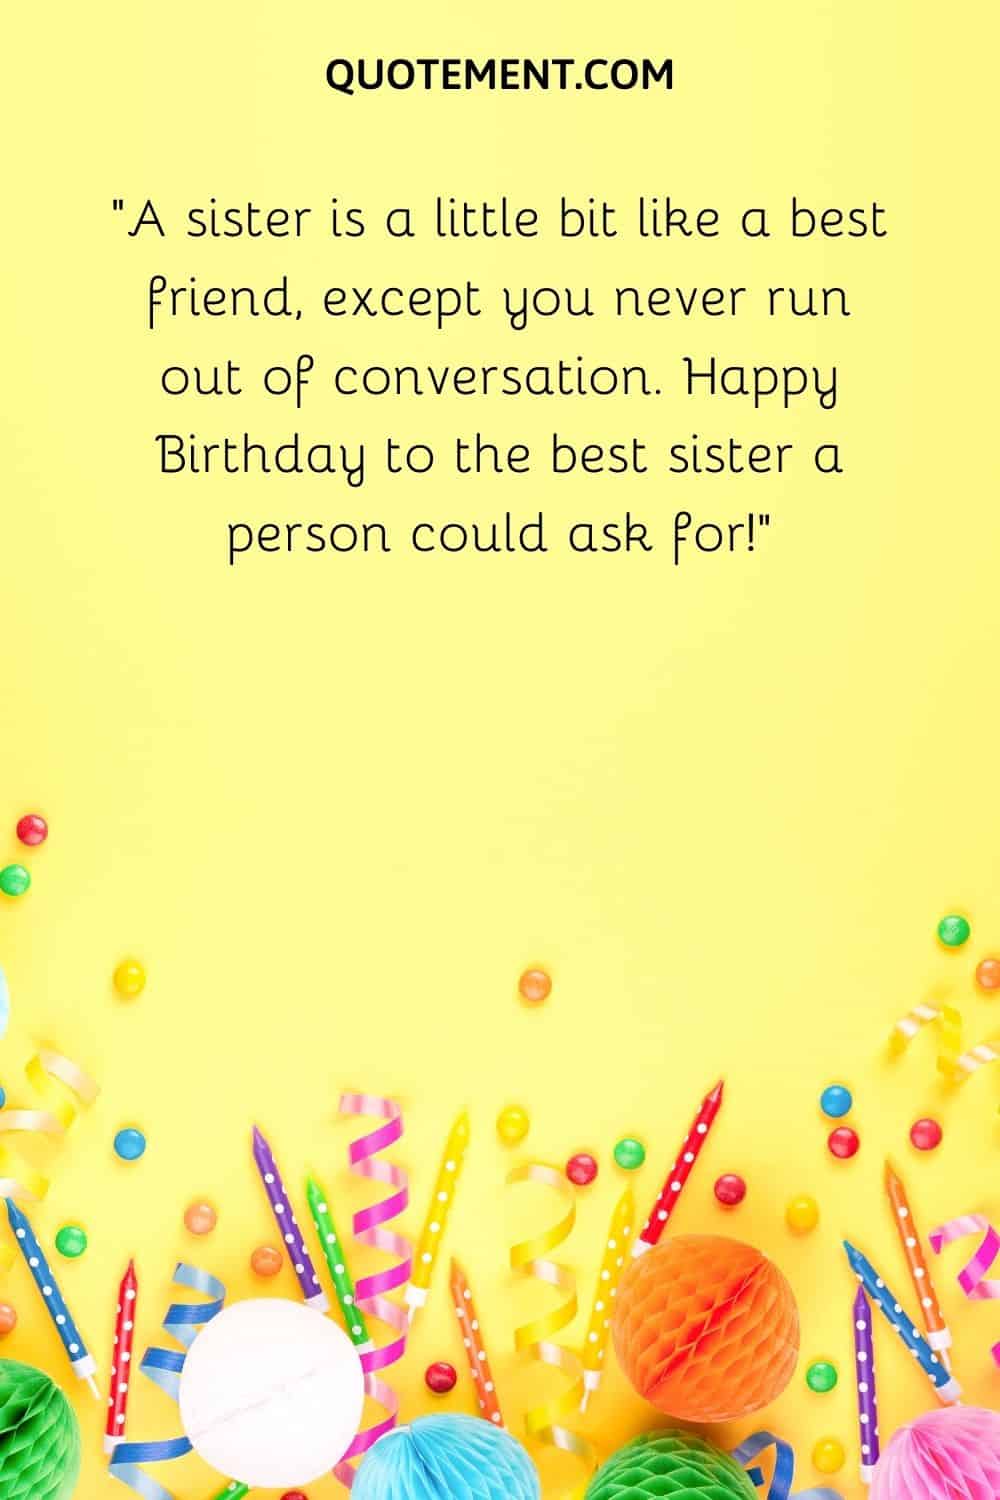 A sister is a little bit like a best friend,